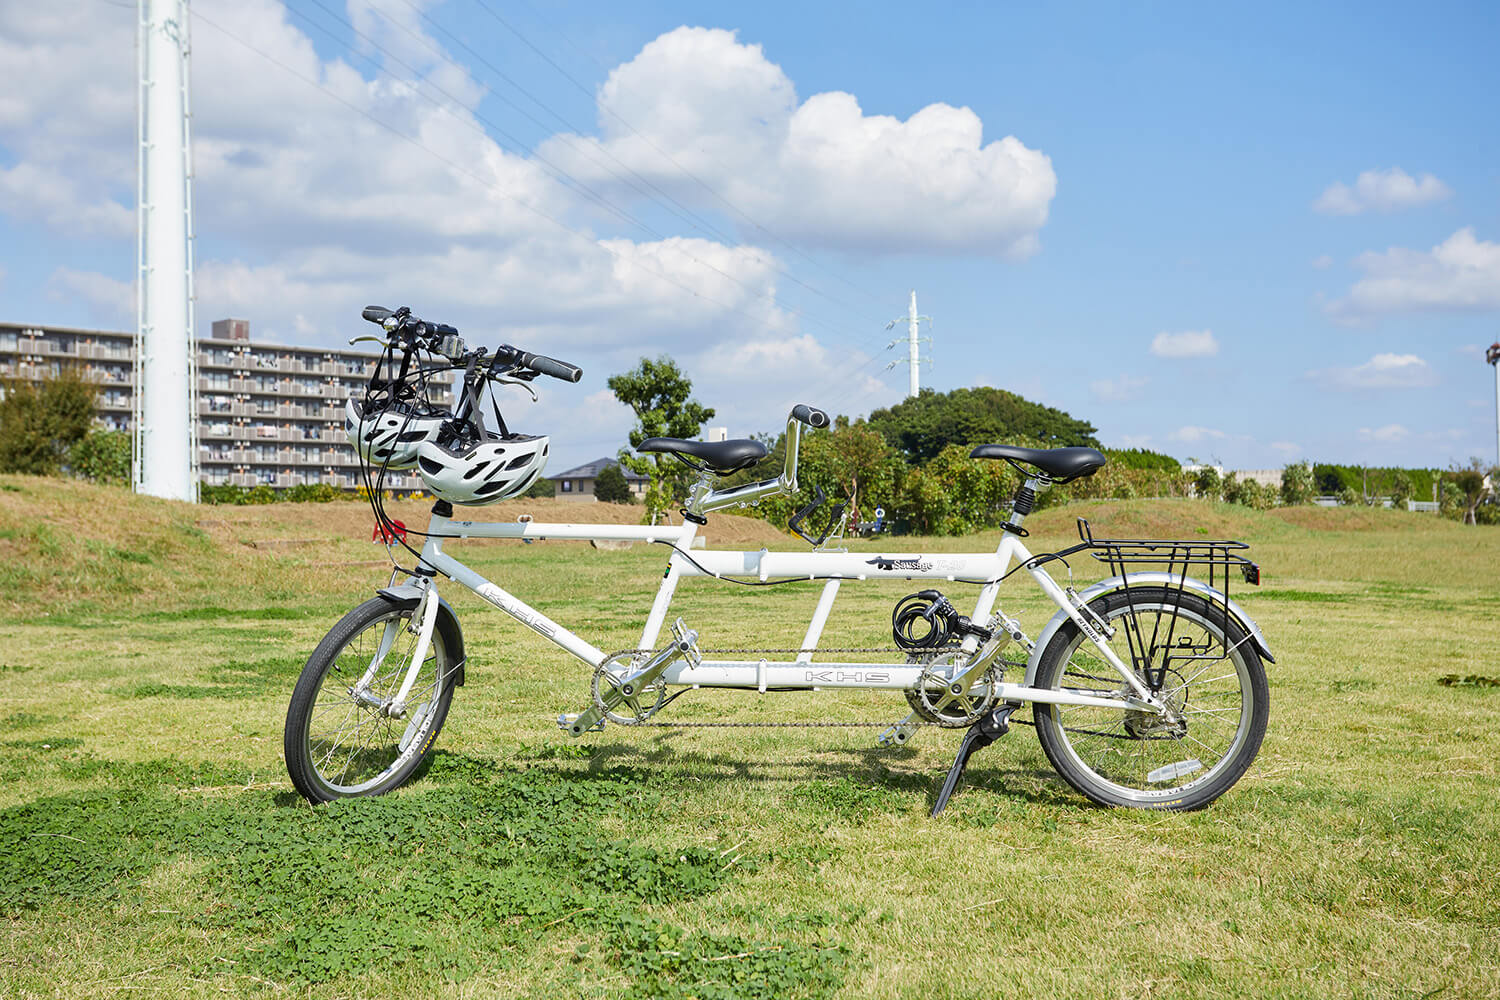 最新のタンデム自転車「T-20」が、1日4,000円で借りられる